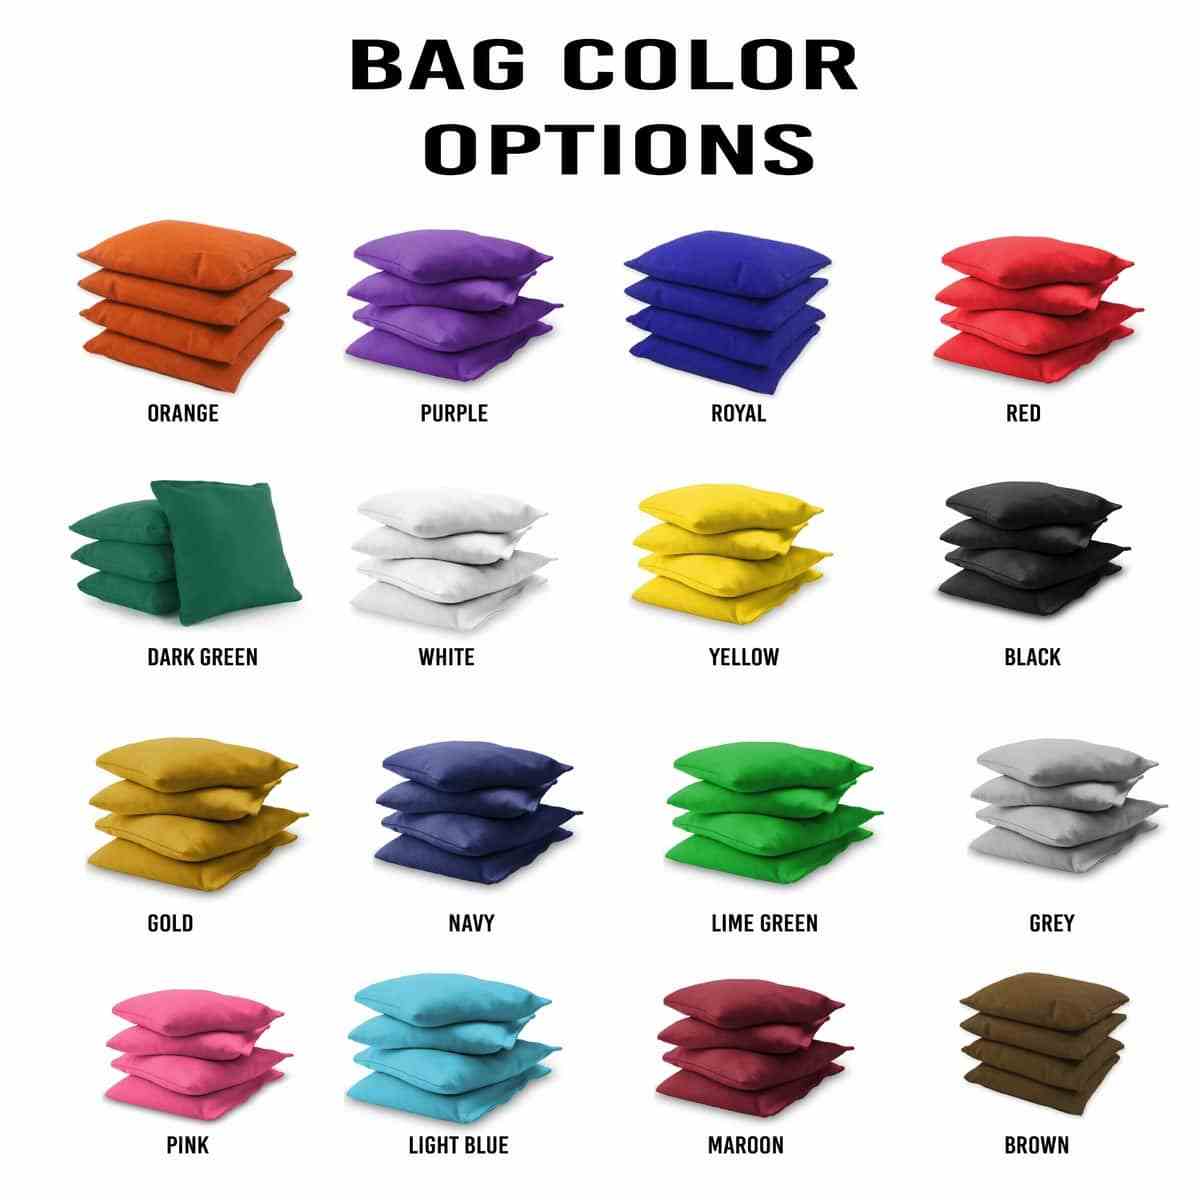 Pirate 2x4 bag colors